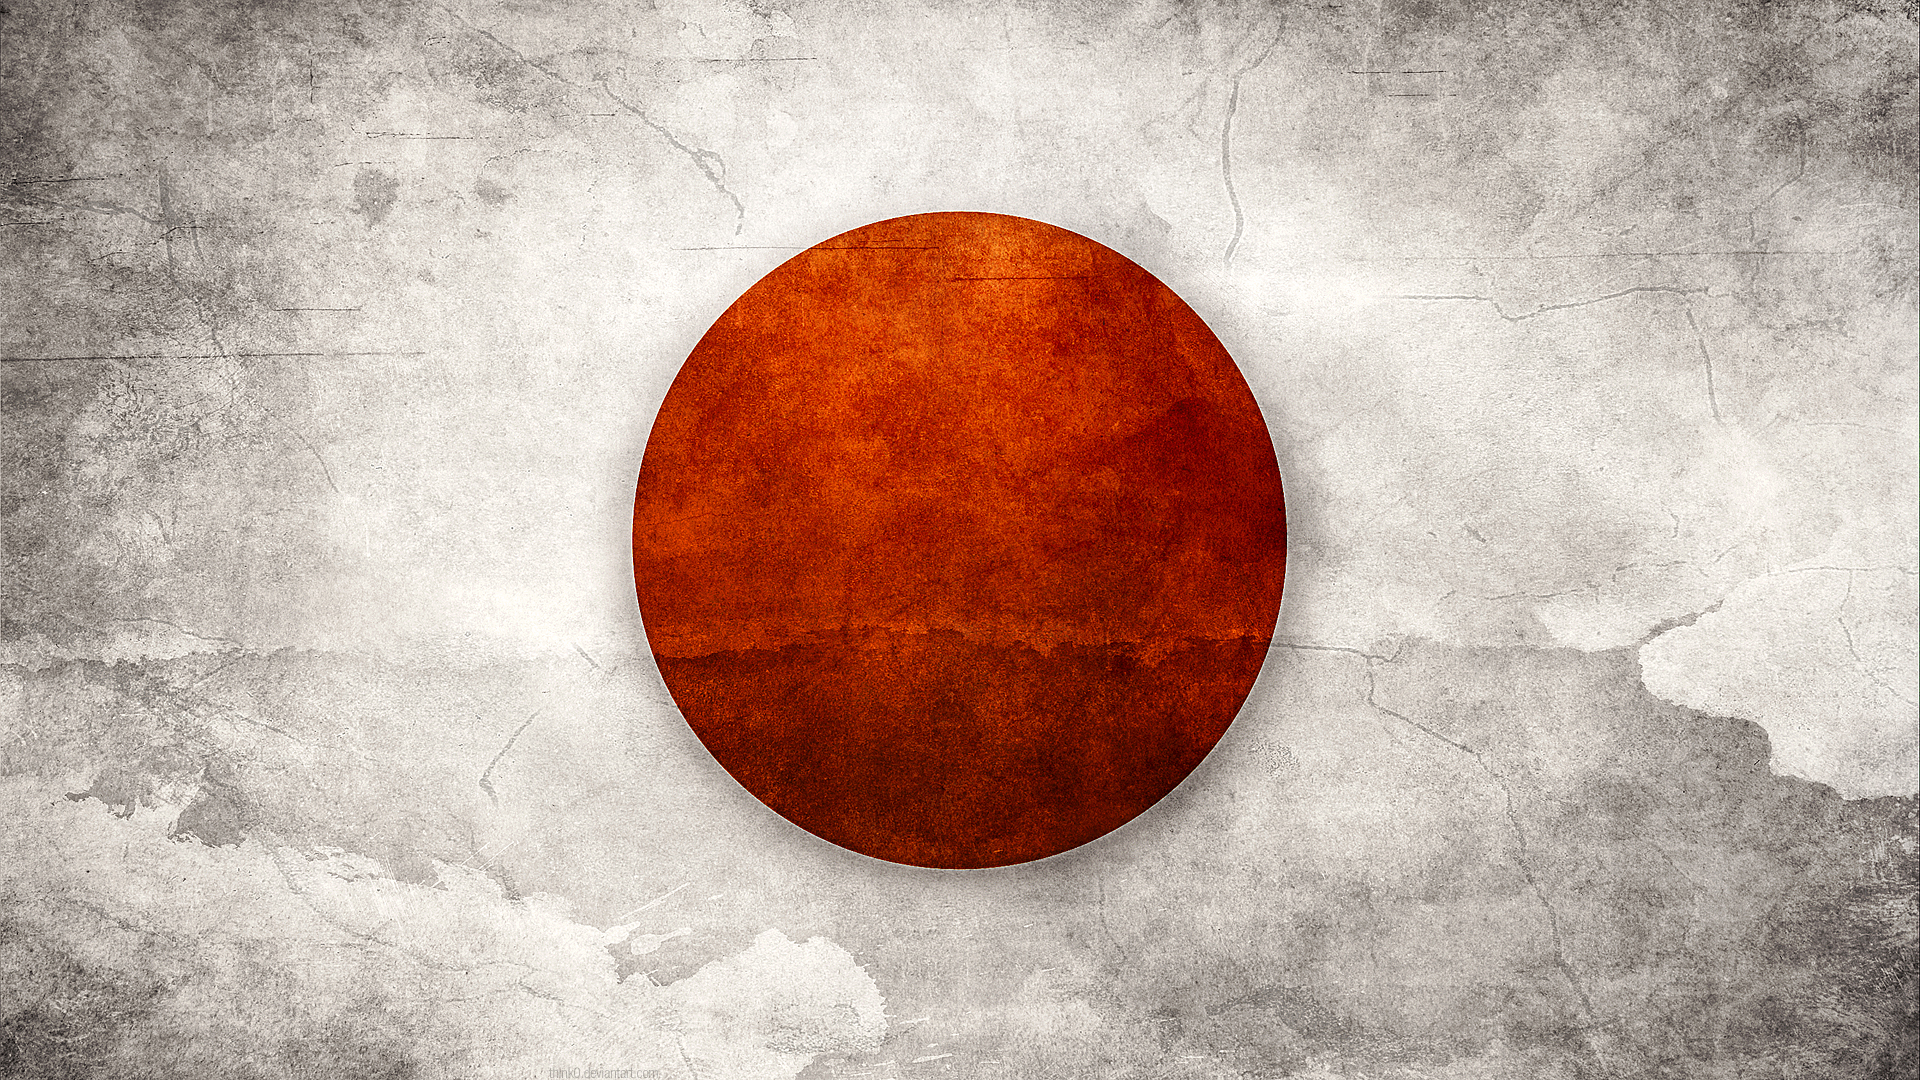 Скачать обои Японский Флаг на телефон бесплатно